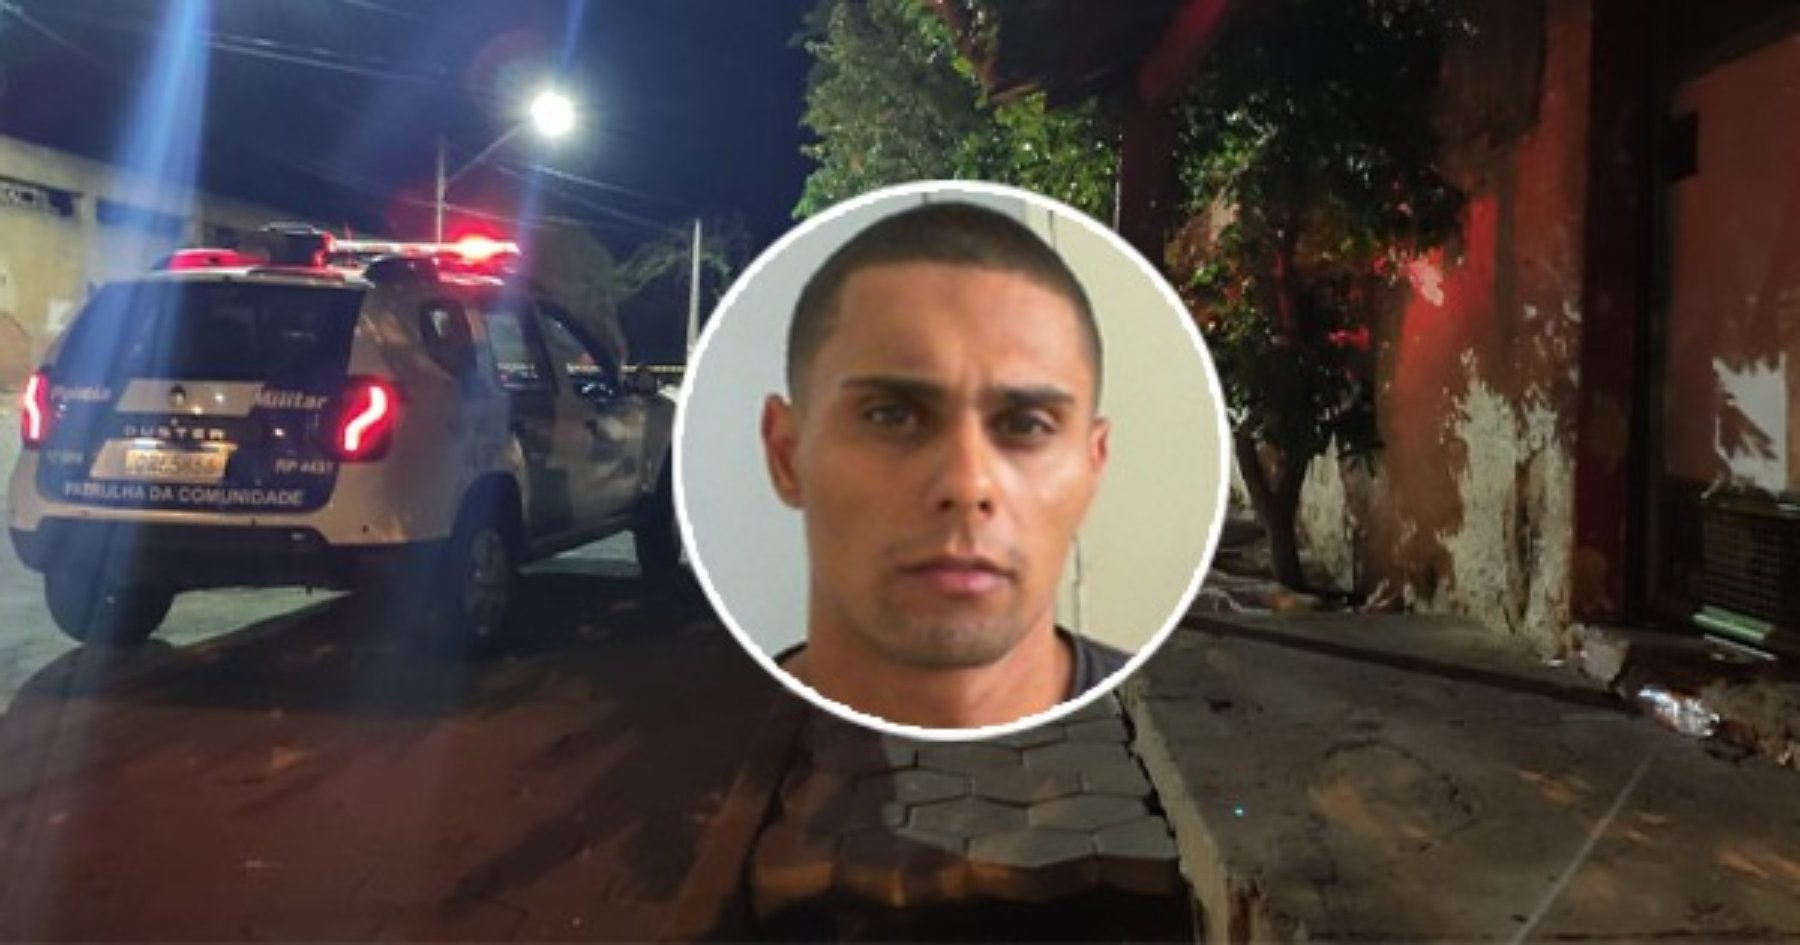 Diego da Conceição, 29 anos, foi morto na noite desta quarta-feira (13), no bairro Aviso. Ele é suspeito de ser o assassino da mãe, Tereza da Conceição, de 55 anos, no Natal de 2019